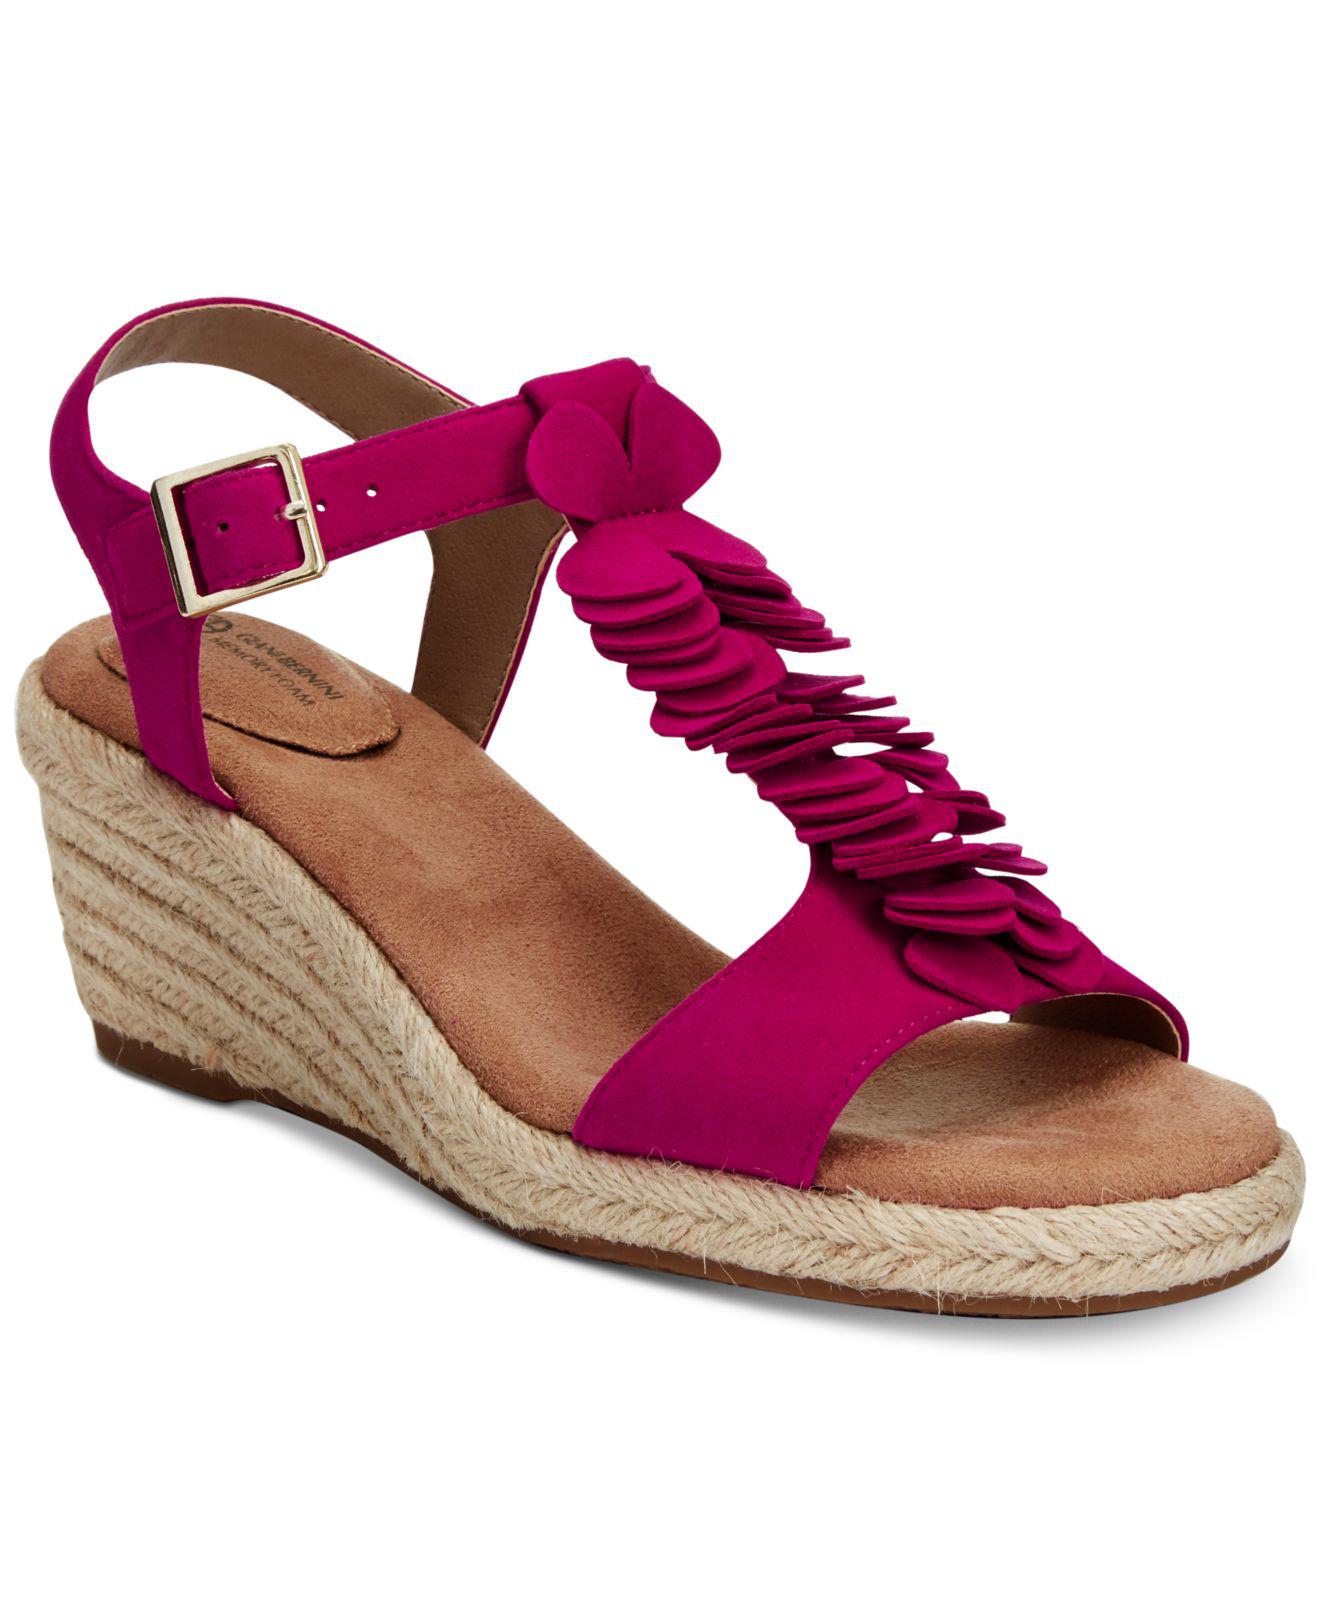 Lyst - Giani Bernini Fayee Memory Foam Wedge Sandals, Created For Macy ...